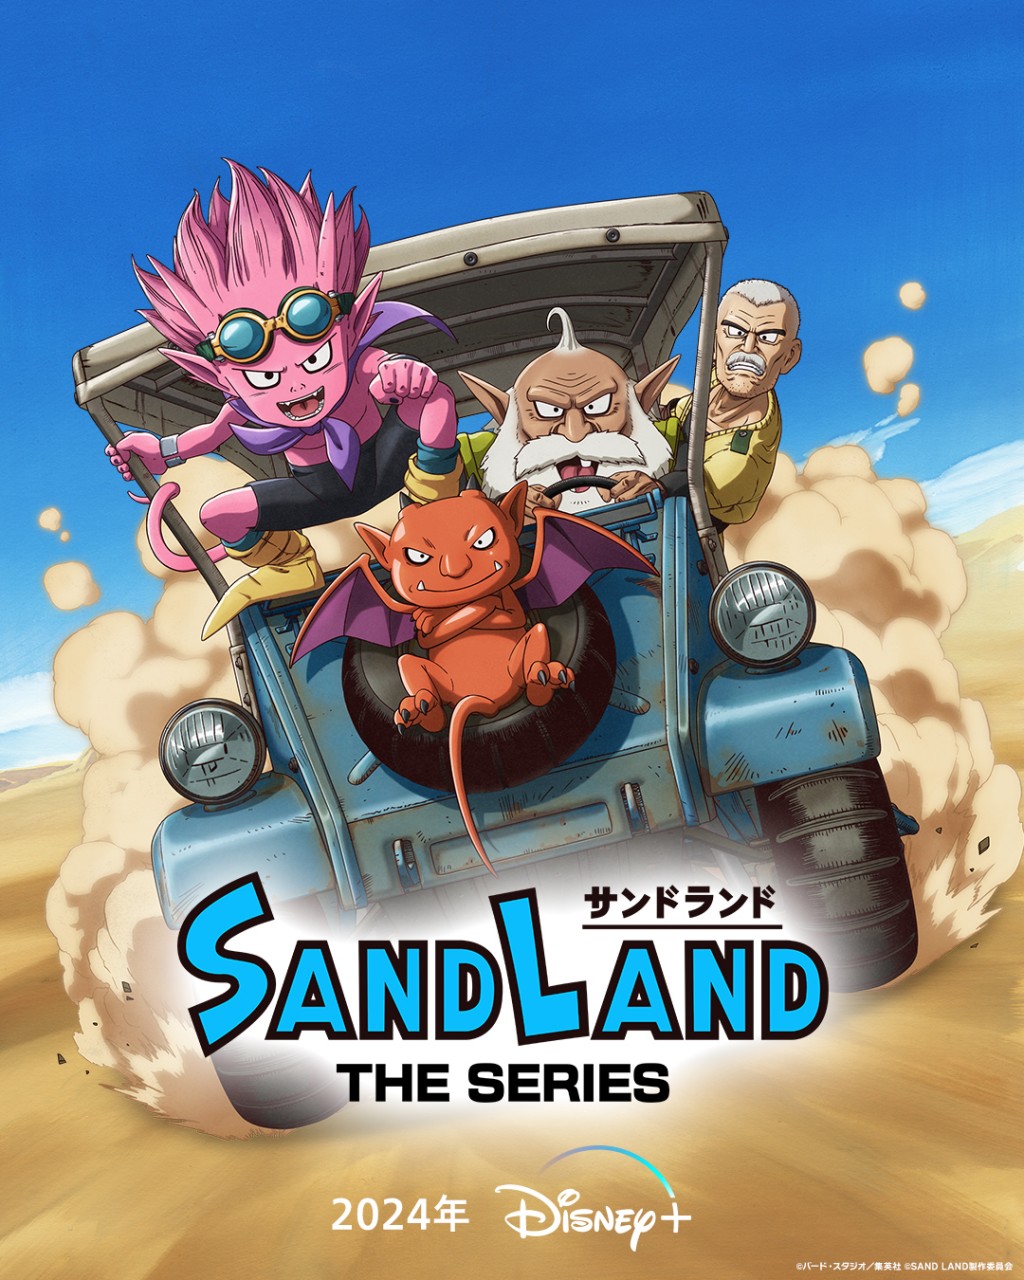 全新日本動畫《Sand Land: The Series》將於2024年春天Disney+ 獨家上線。